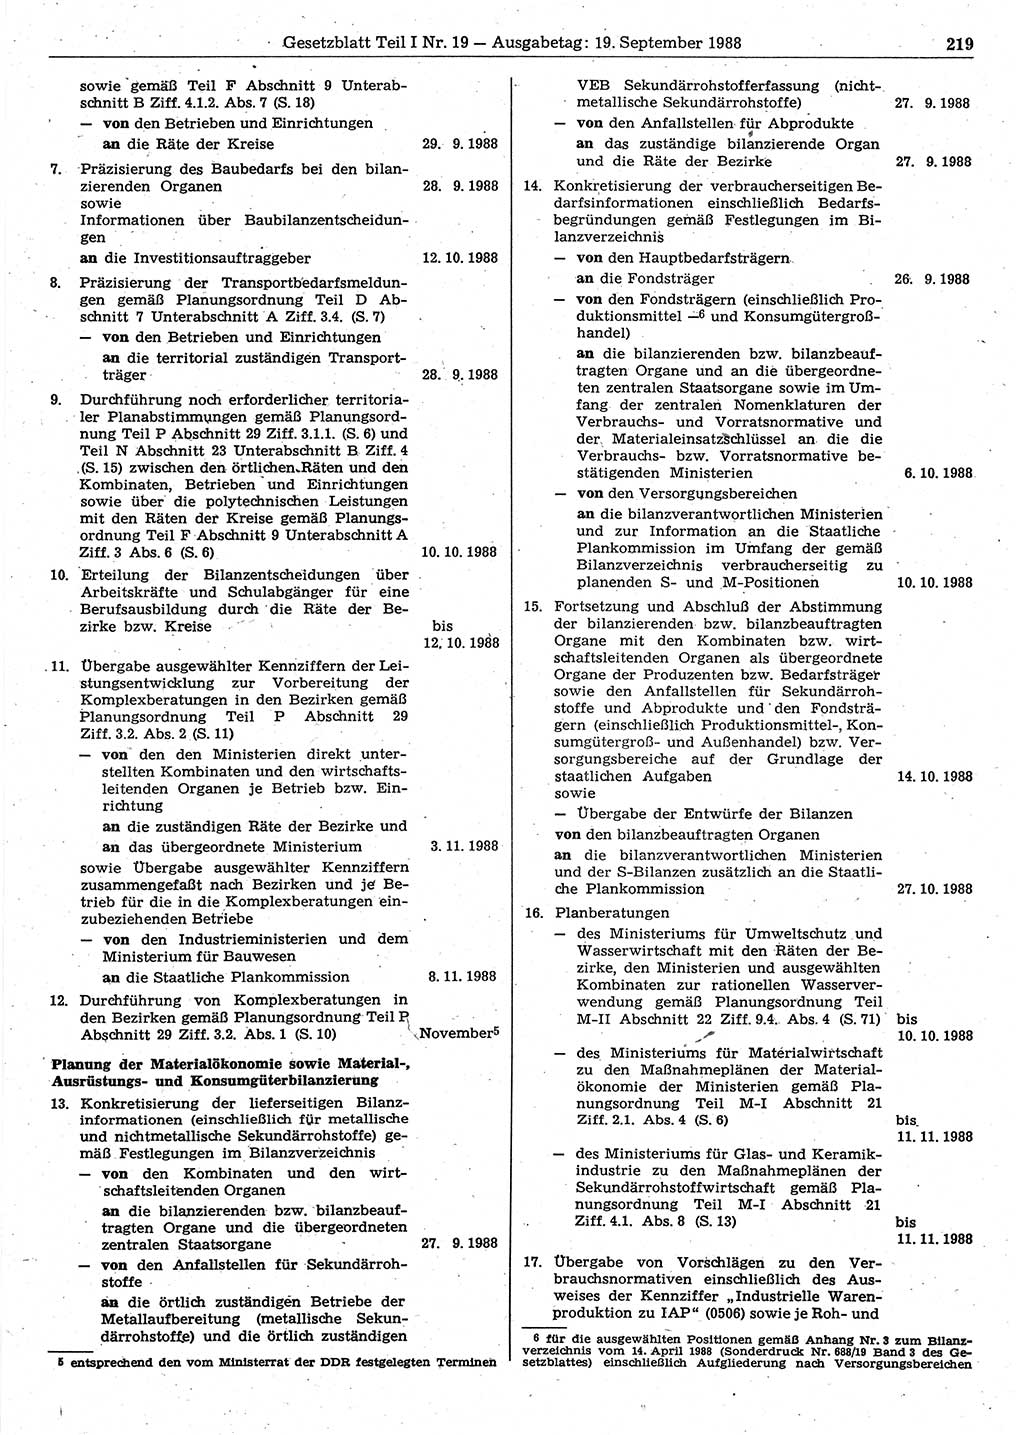 Gesetzblatt (GBl.) der Deutschen Demokratischen Republik (DDR) Teil Ⅰ 1988, Seite 219 (GBl. DDR Ⅰ 1988, S. 219)